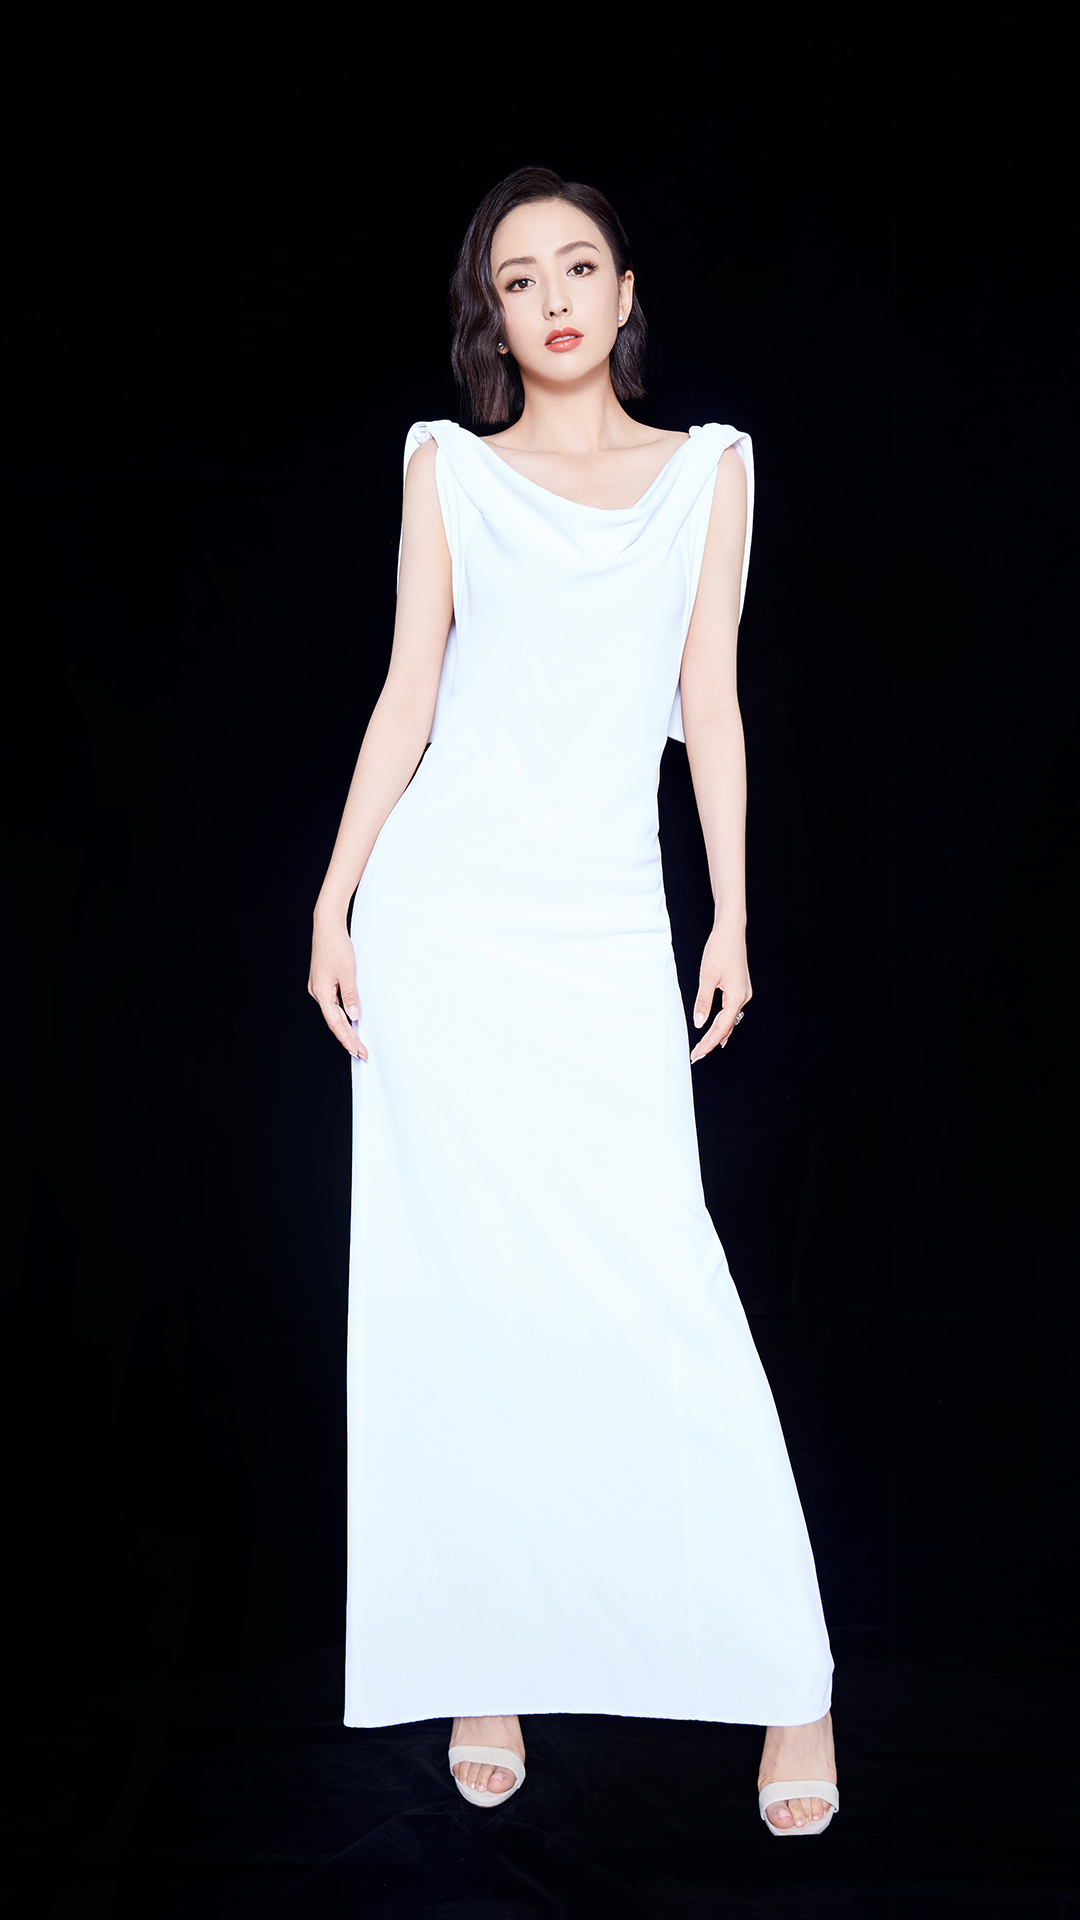 佟丽娅穿刺绣白裙气质清雅 一头微卷短发精致时髦